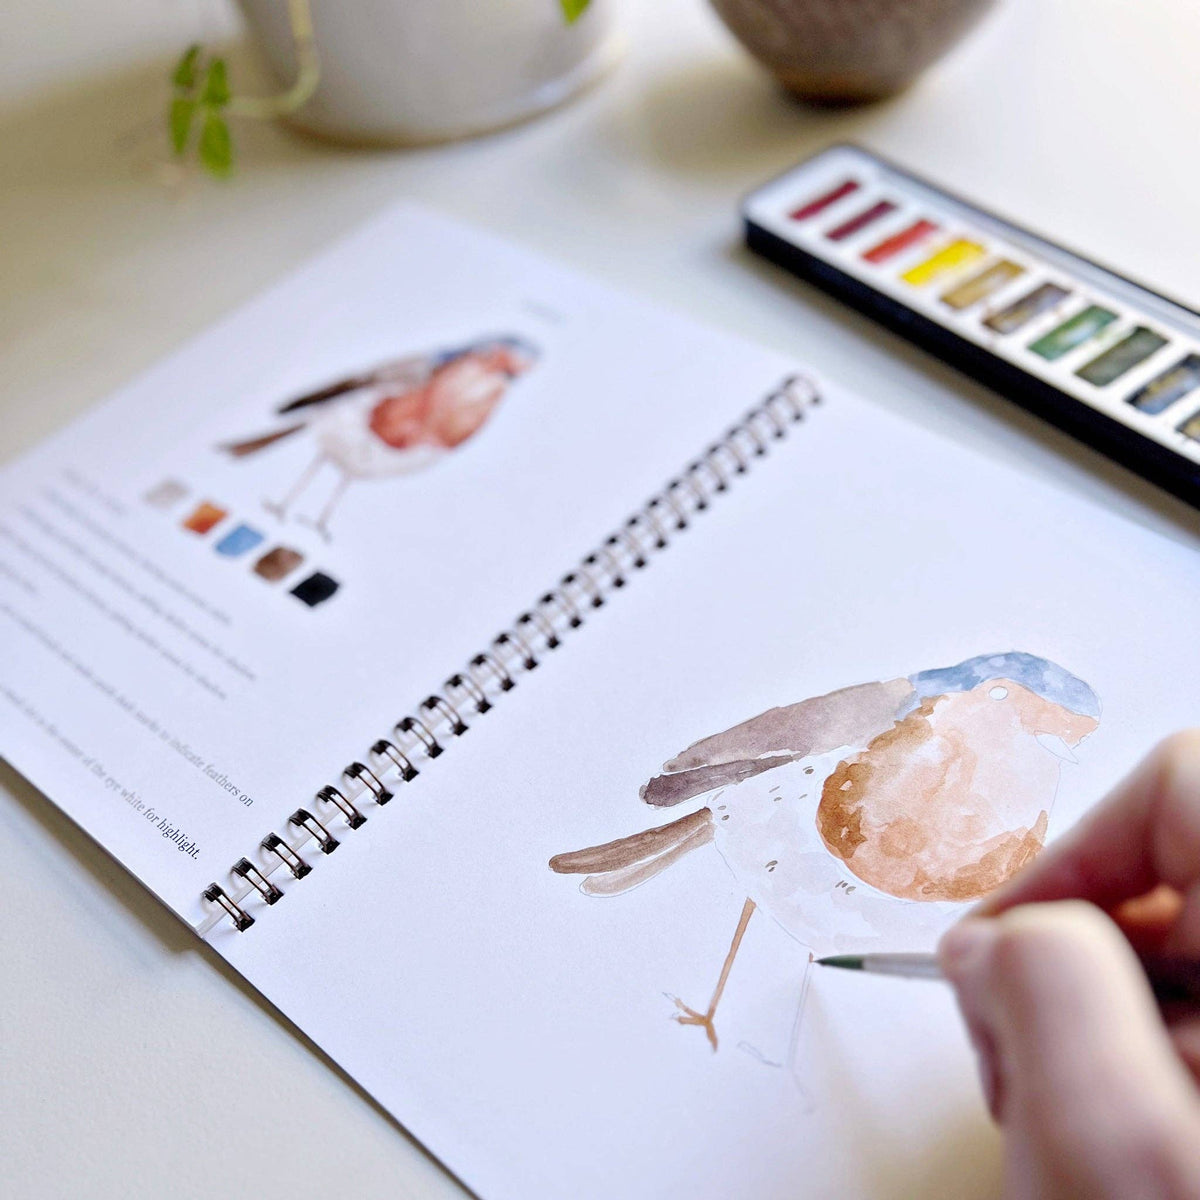 watercolor workbook birds - The Preppy Bunny